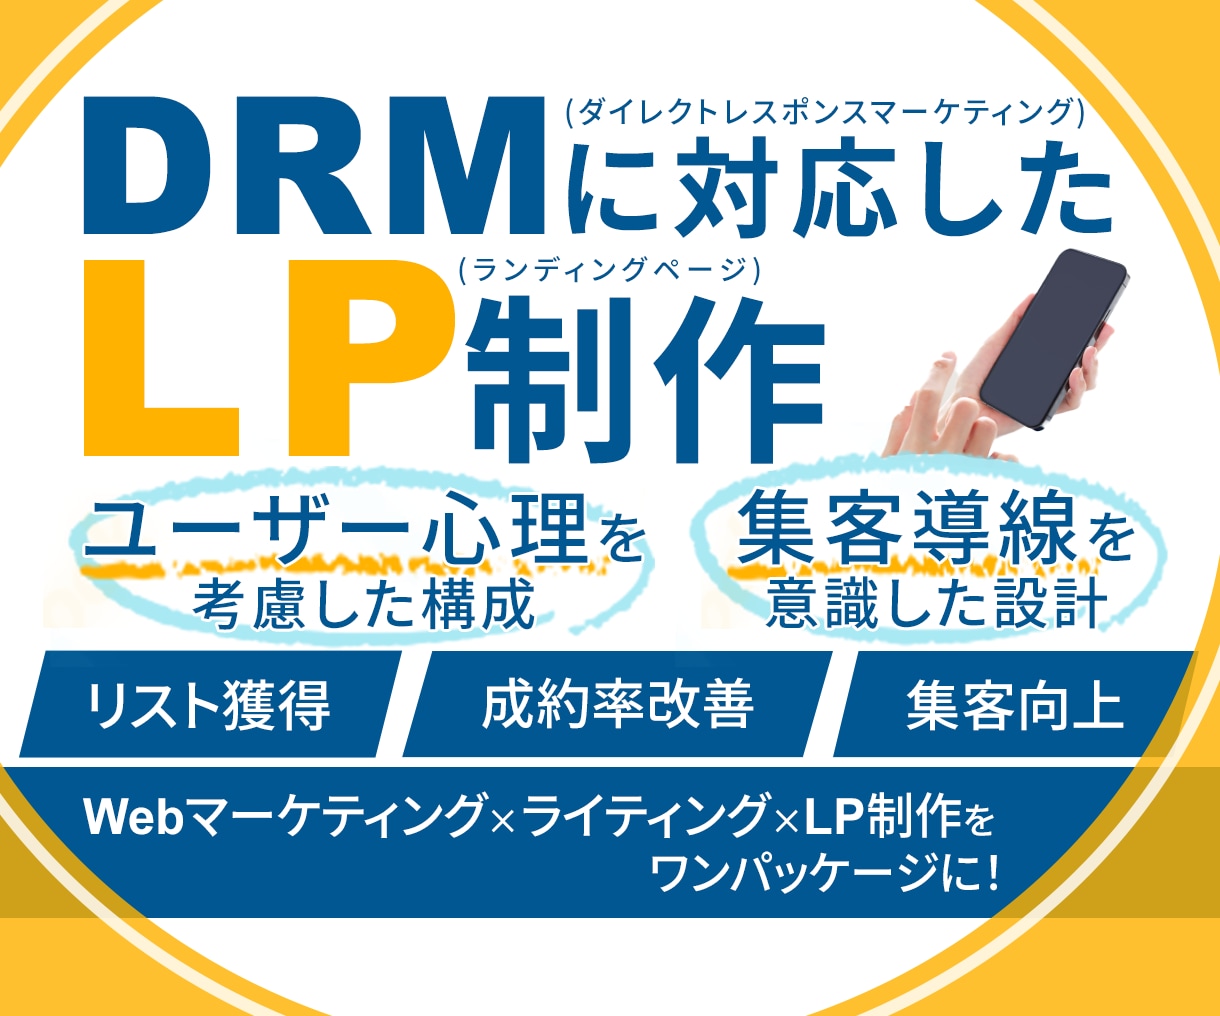 DRMに対応したLPを制作します ダイレクトレスポンスマーケティングで集客向上したい方向け イメージ1